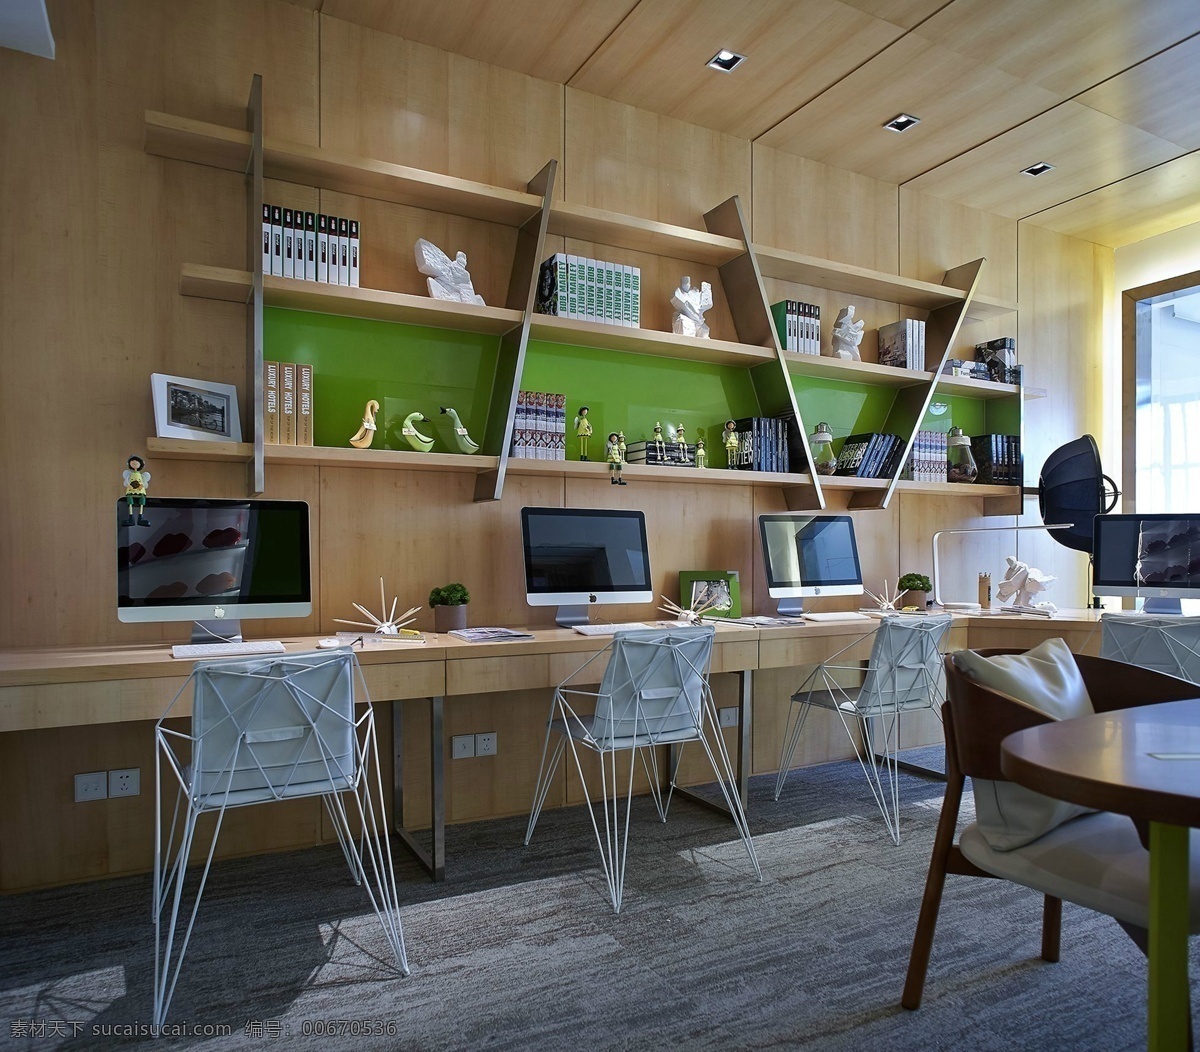 简约 室内 书房 设计图 家居 家居生活 室内设计 装修 家具 装修设计 环境设计 书桌 书柜